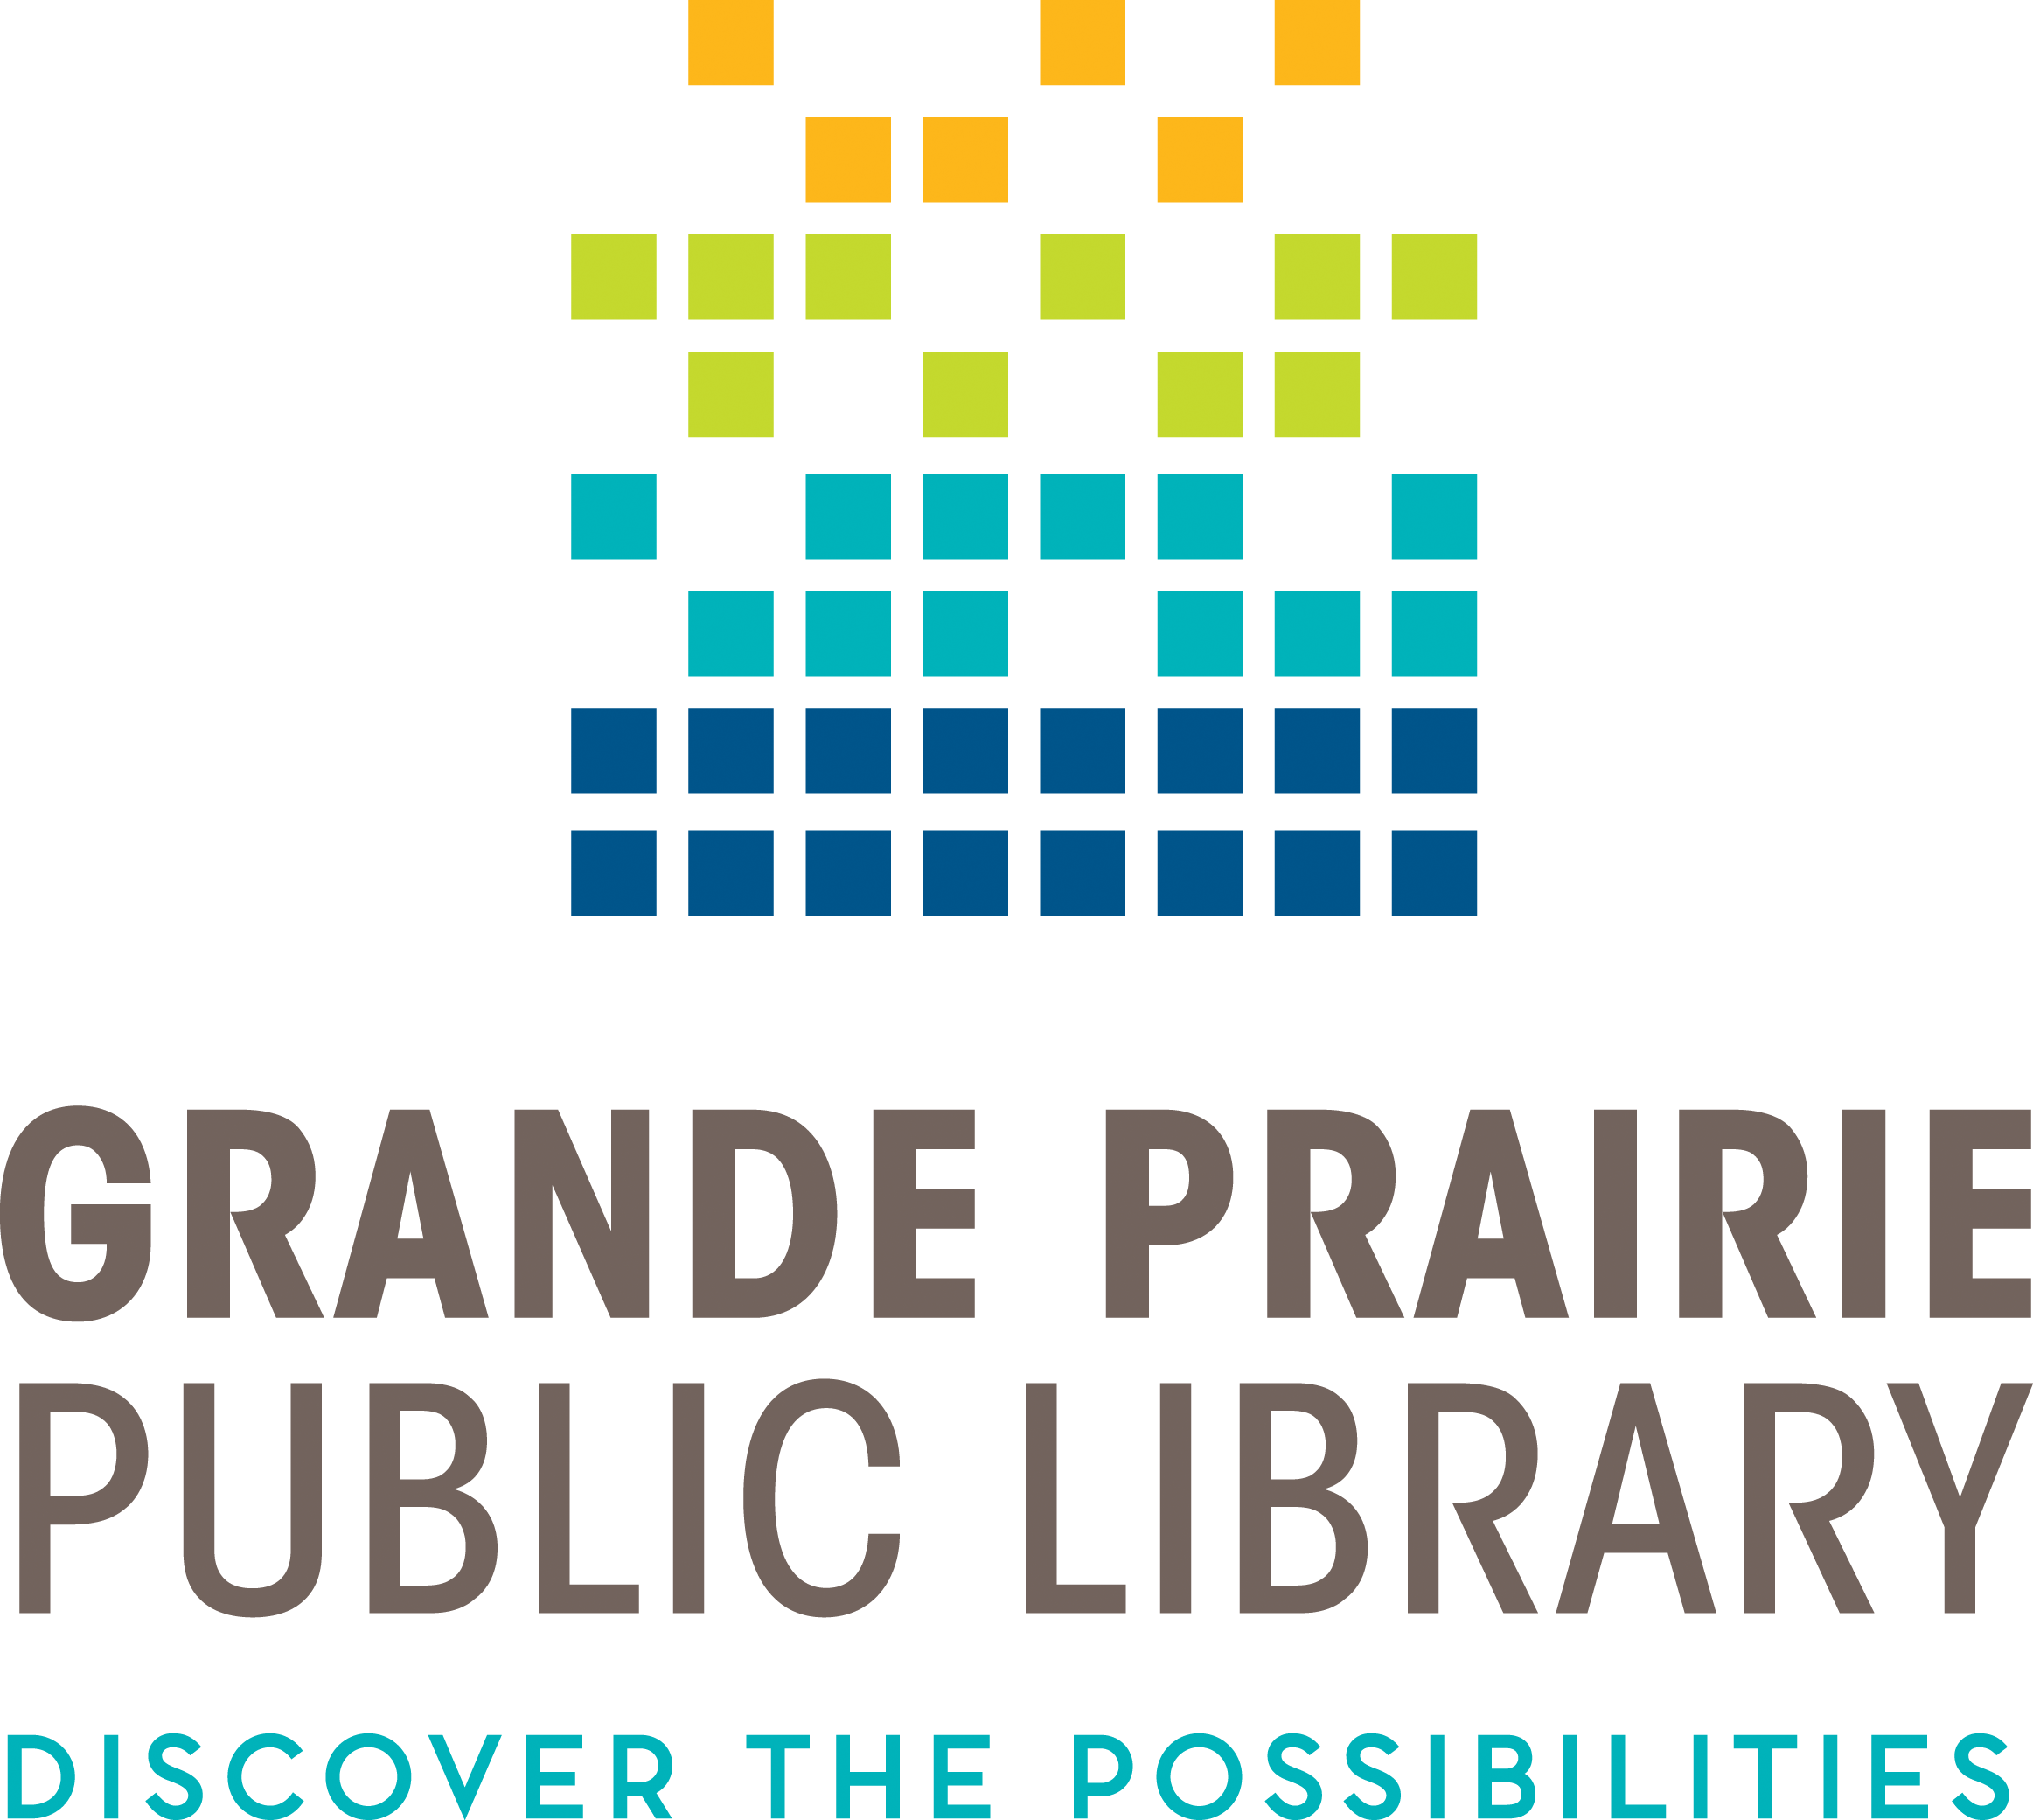 GPPL logo